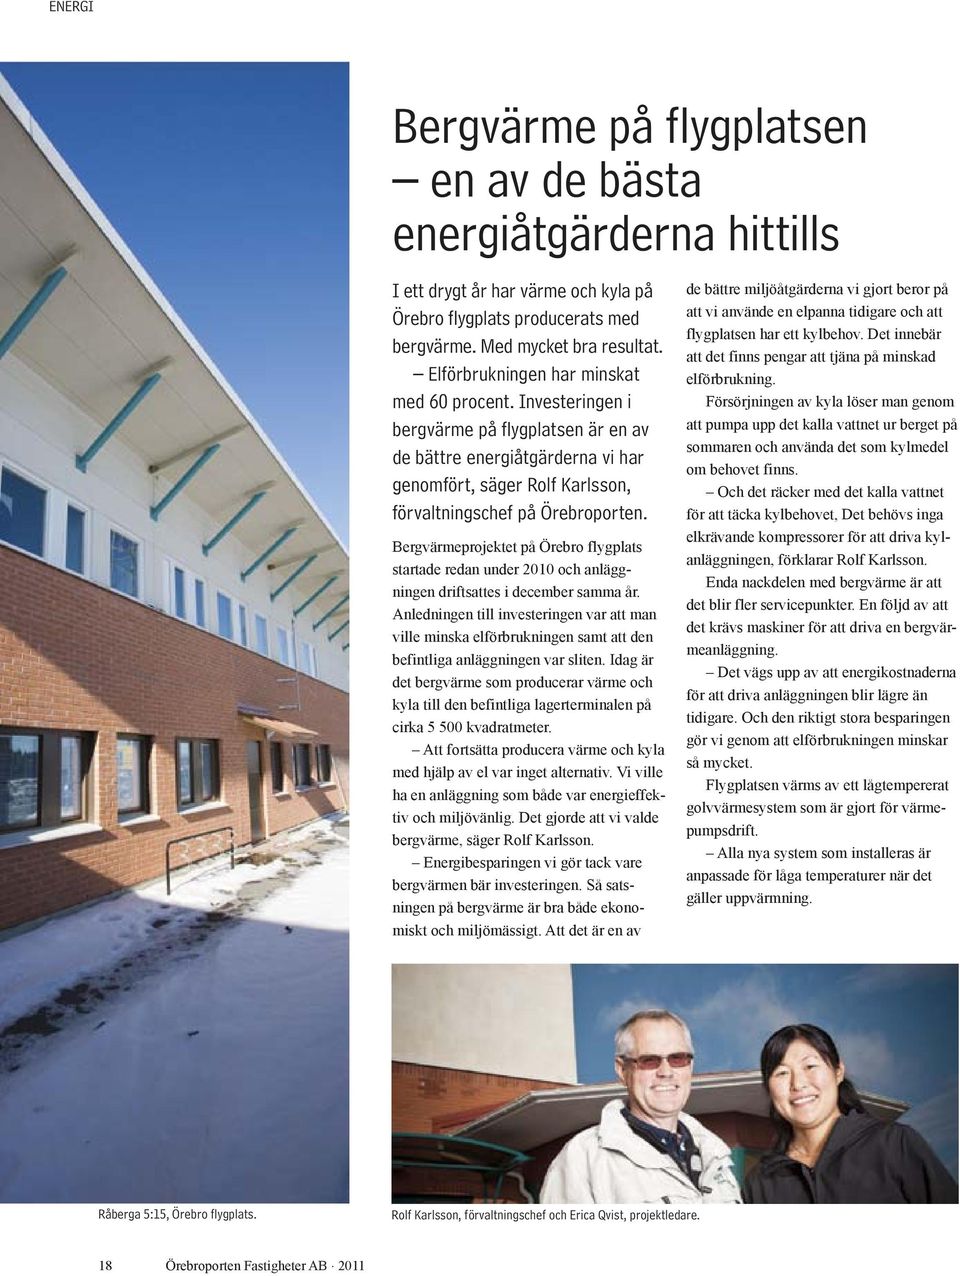 Bergvärmeprojektet på Örebro flygplats startade redan under 2010 och anläggningen driftsattes i december samma år.